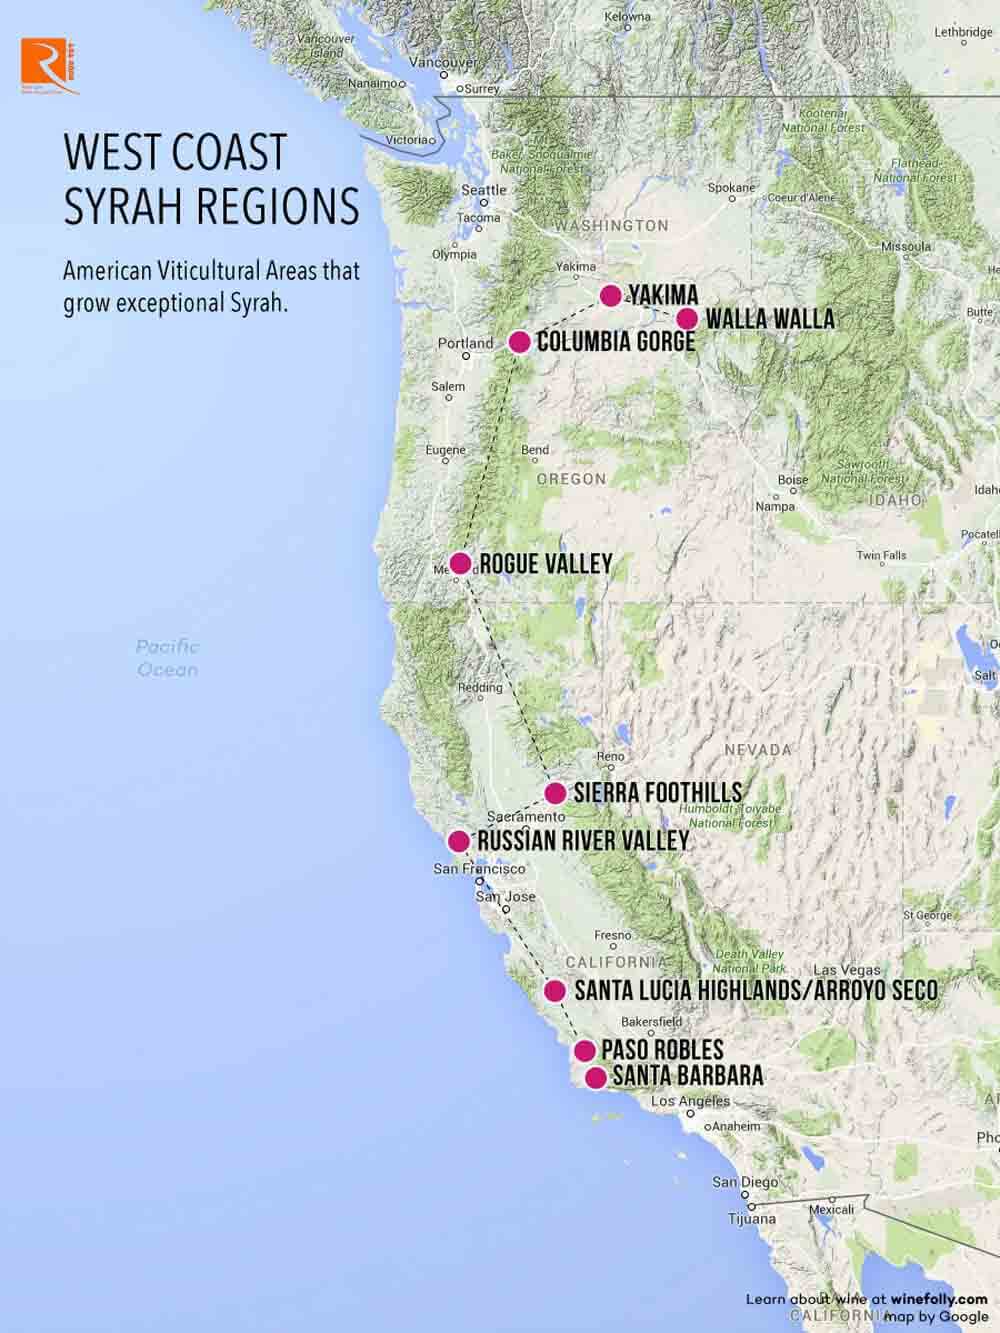  xác định các khu vực được biết đến nhiều nhất với Syrah trên West Coast,